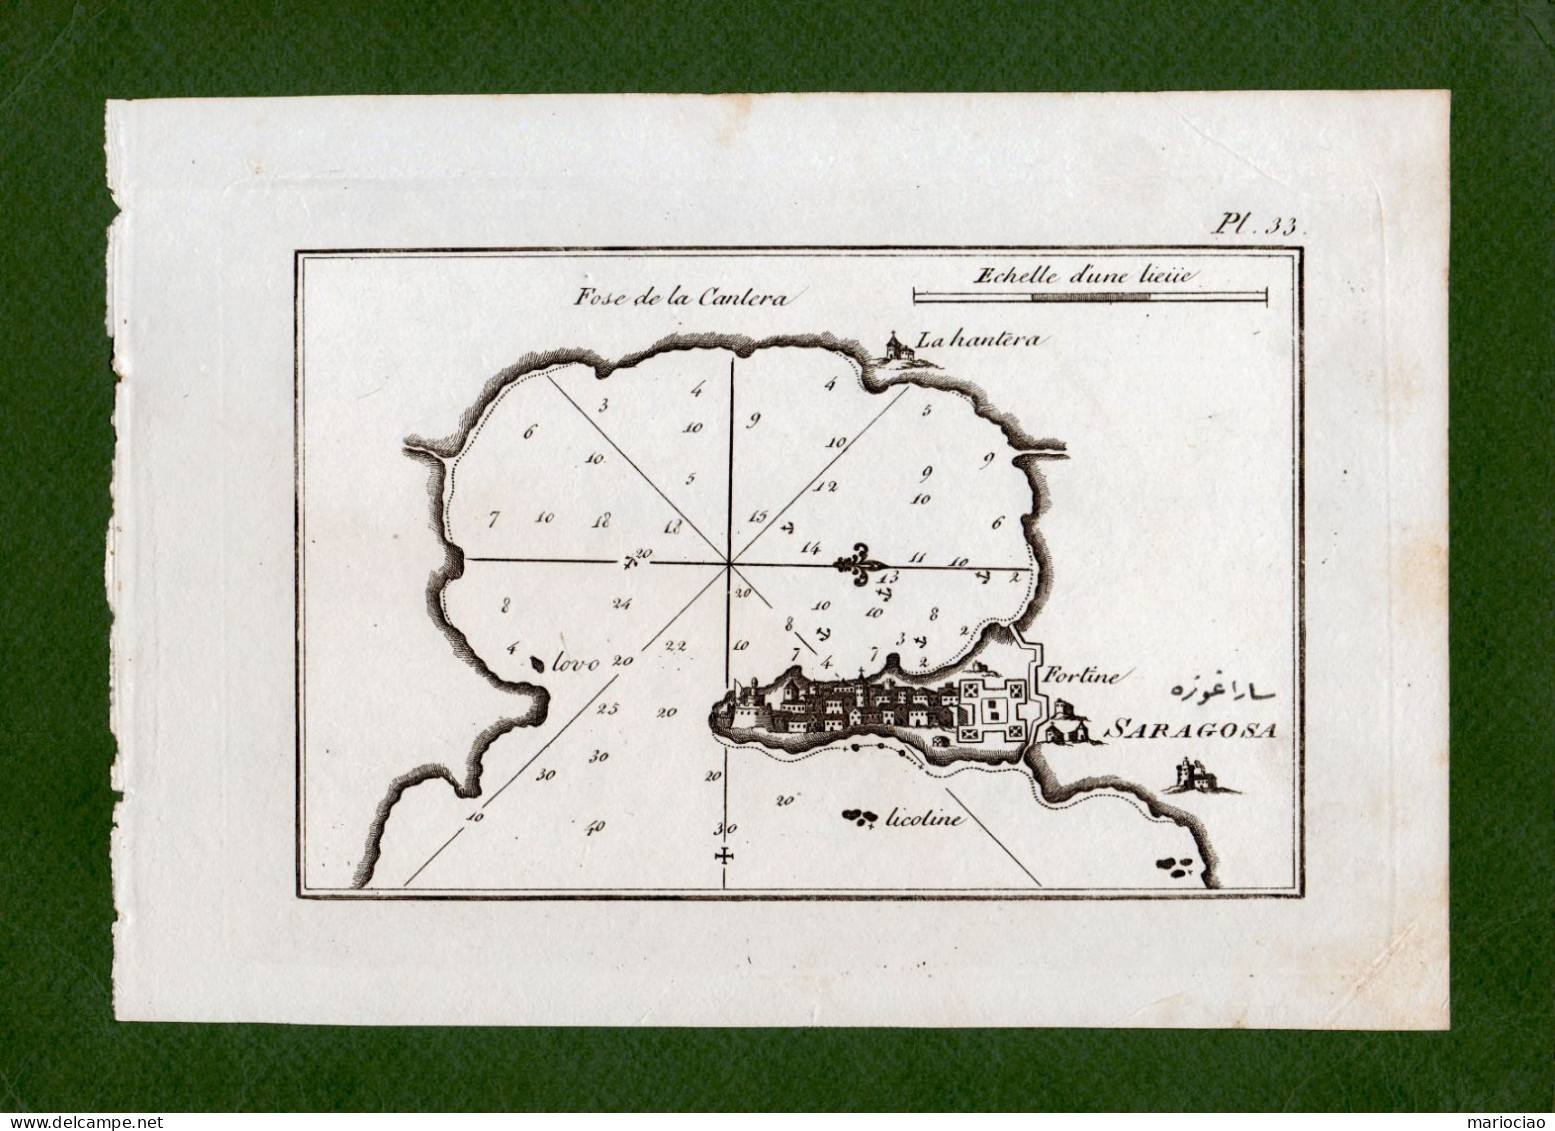 ST-IT SIRACUSA -Saragosa ROUX 1795~ CARTA NAUTICA Con Profondità Del Mare - Estampes & Gravures